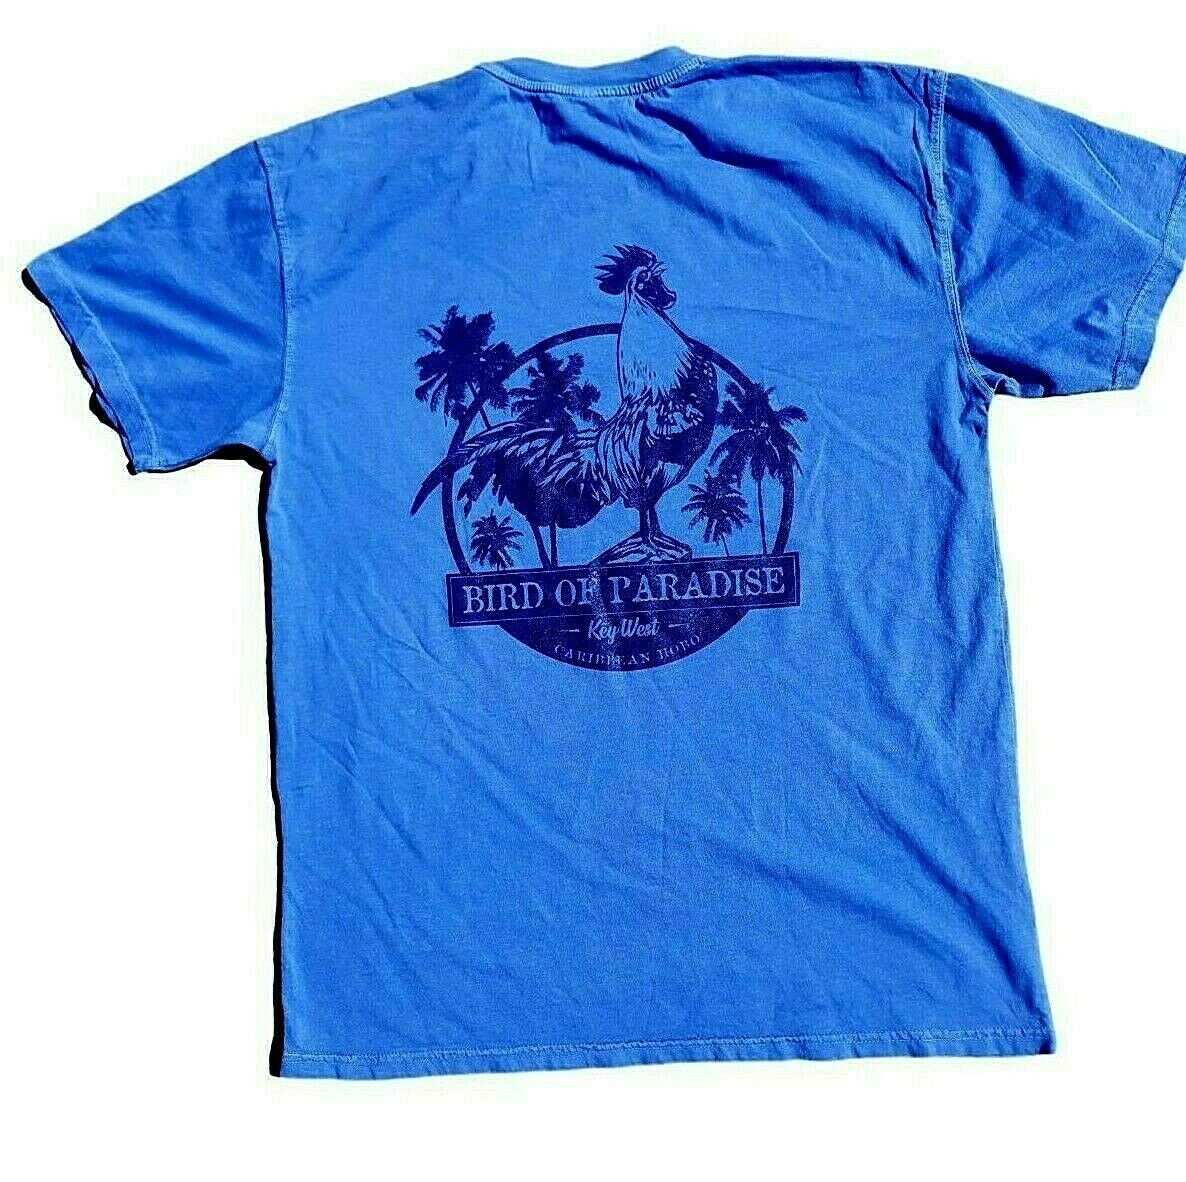 Bird of Paradise t-shirt.